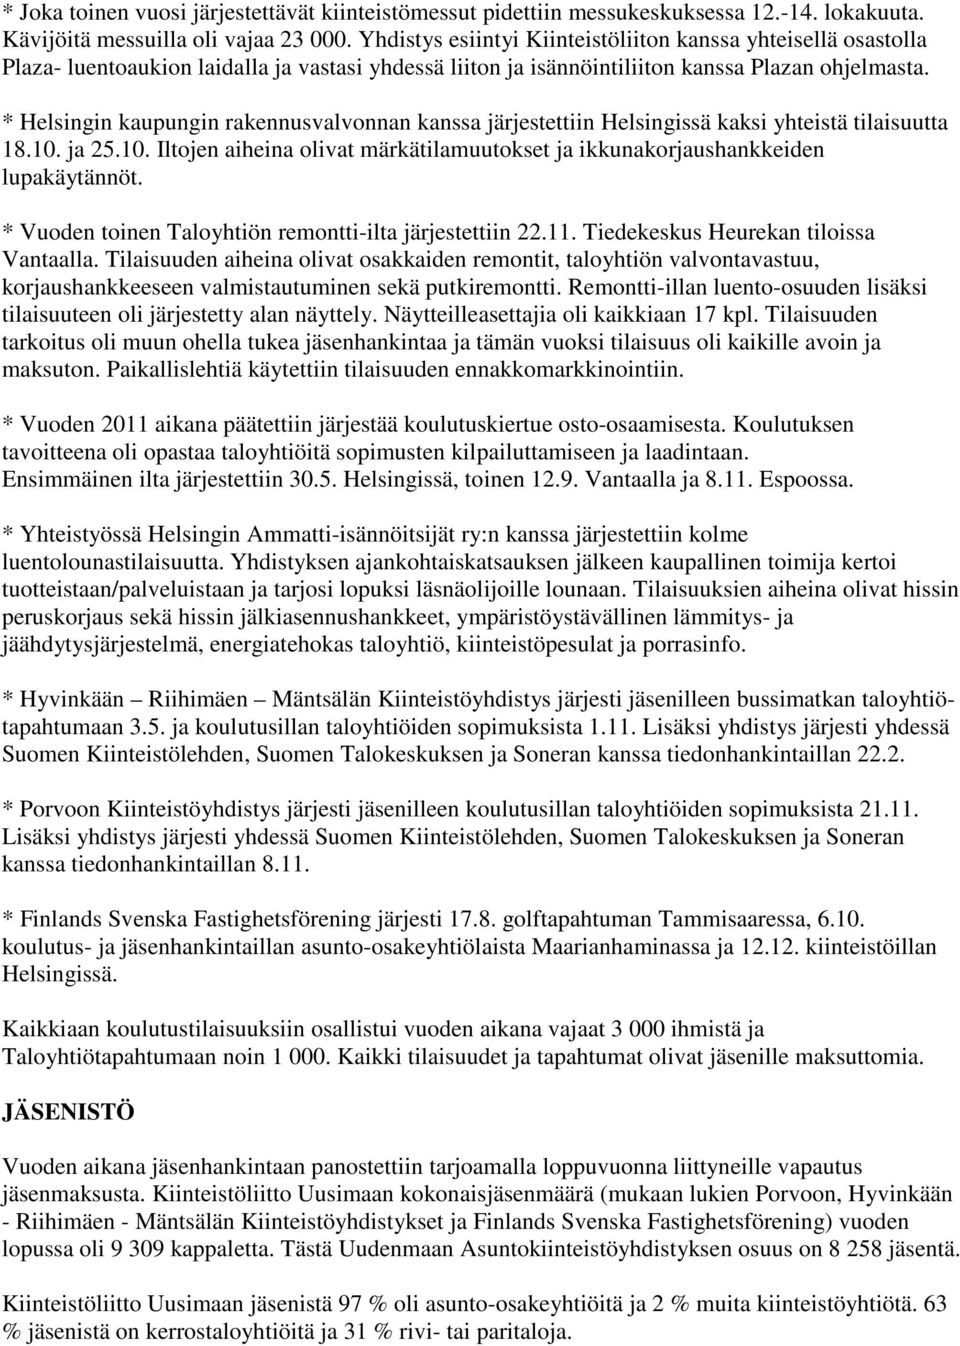 * Helsingin kaupungin rakennusvalvonnan kanssa järjestettiin Helsingissä kaksi yhteistä tilaisuutta 18.10. ja 25.10. Iltojen aiheina olivat märkätilamuutokset ja ikkunakorjaushankkeiden lupakäytännöt.